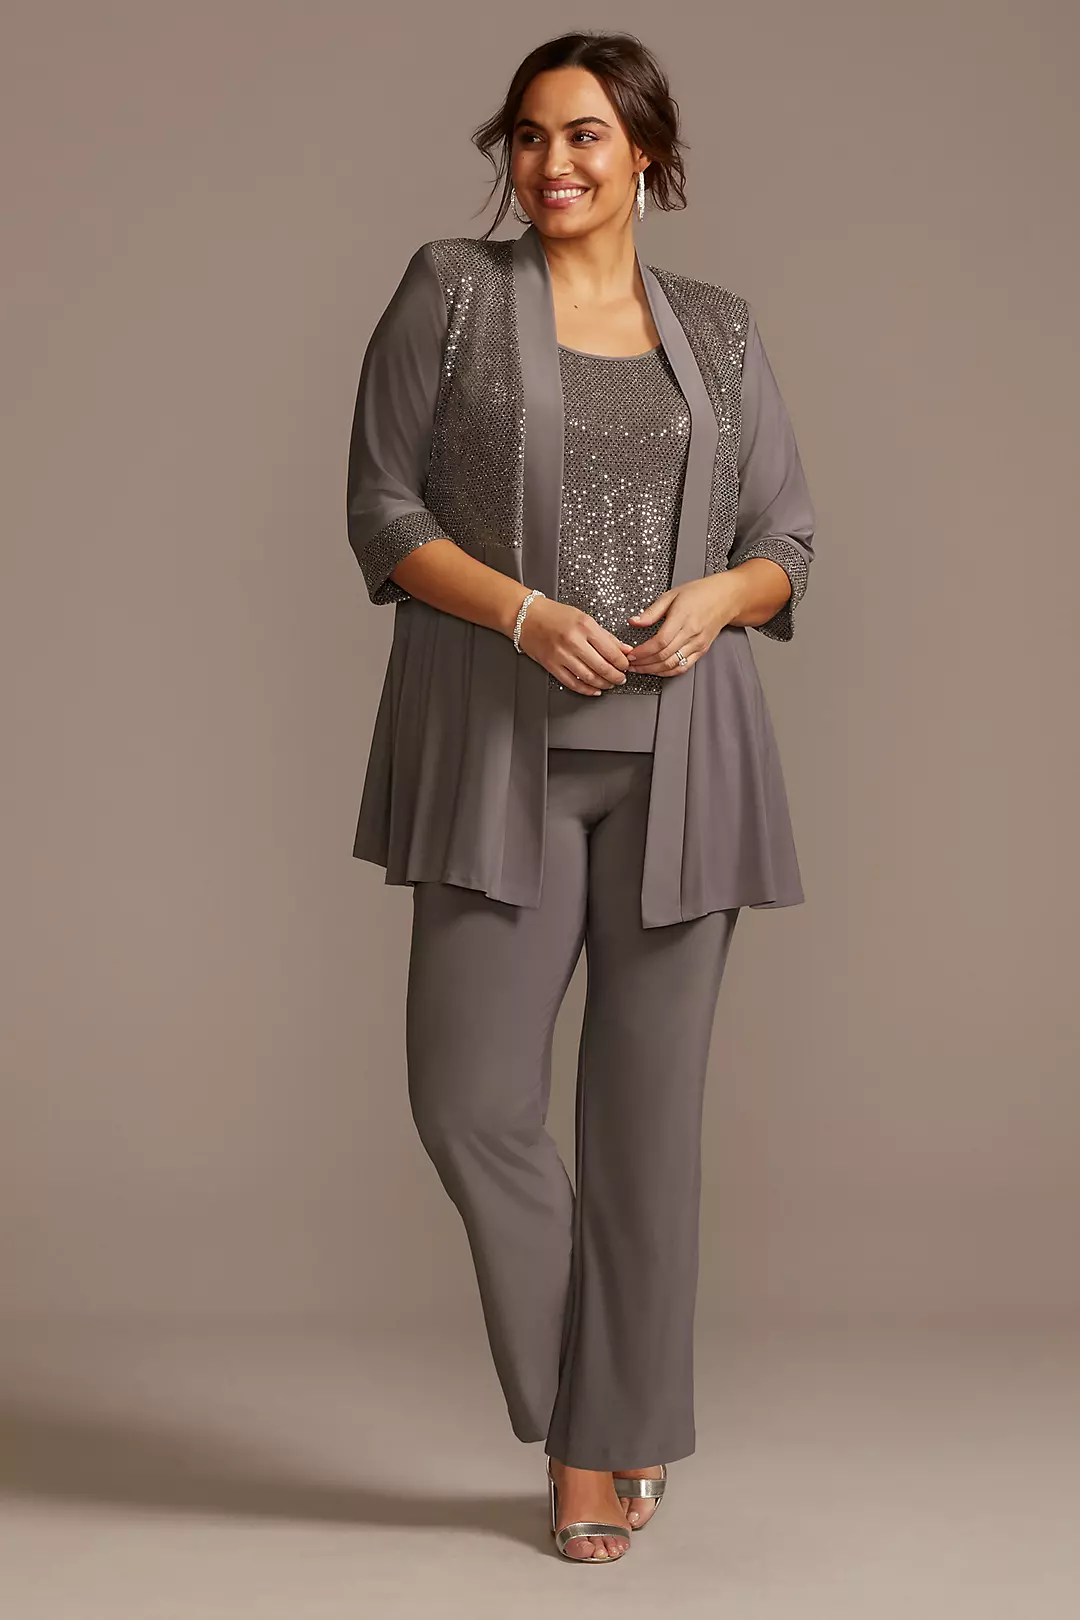 Sequin Chiffon Plus Size Three-Piece Pantsuit Set Image